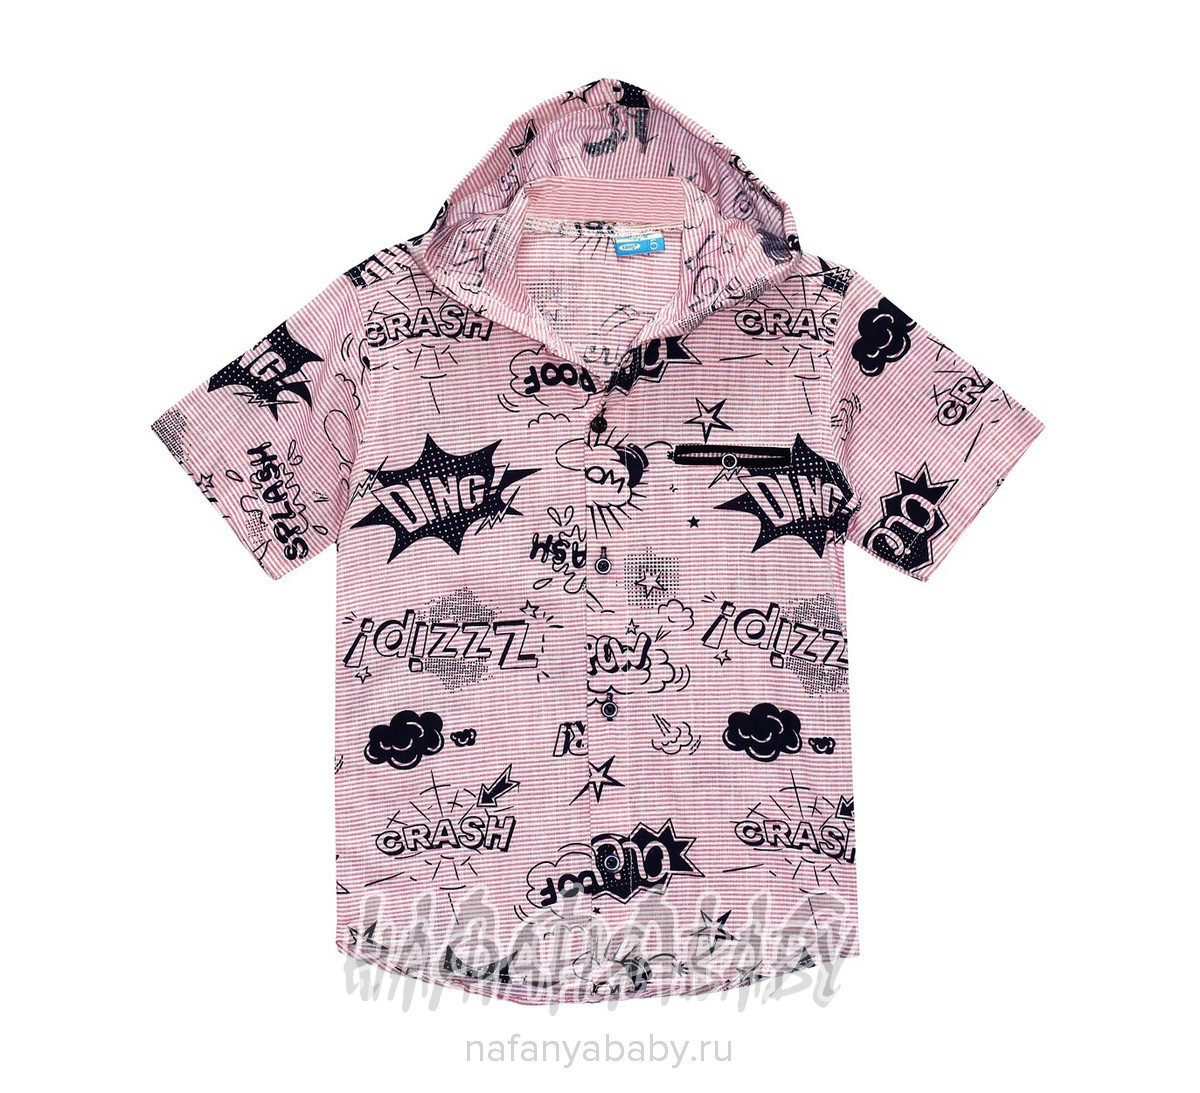 Подростковая рубашка с капюшоном GTR, купить в интернет магазине Нафаня. арт: 2581.